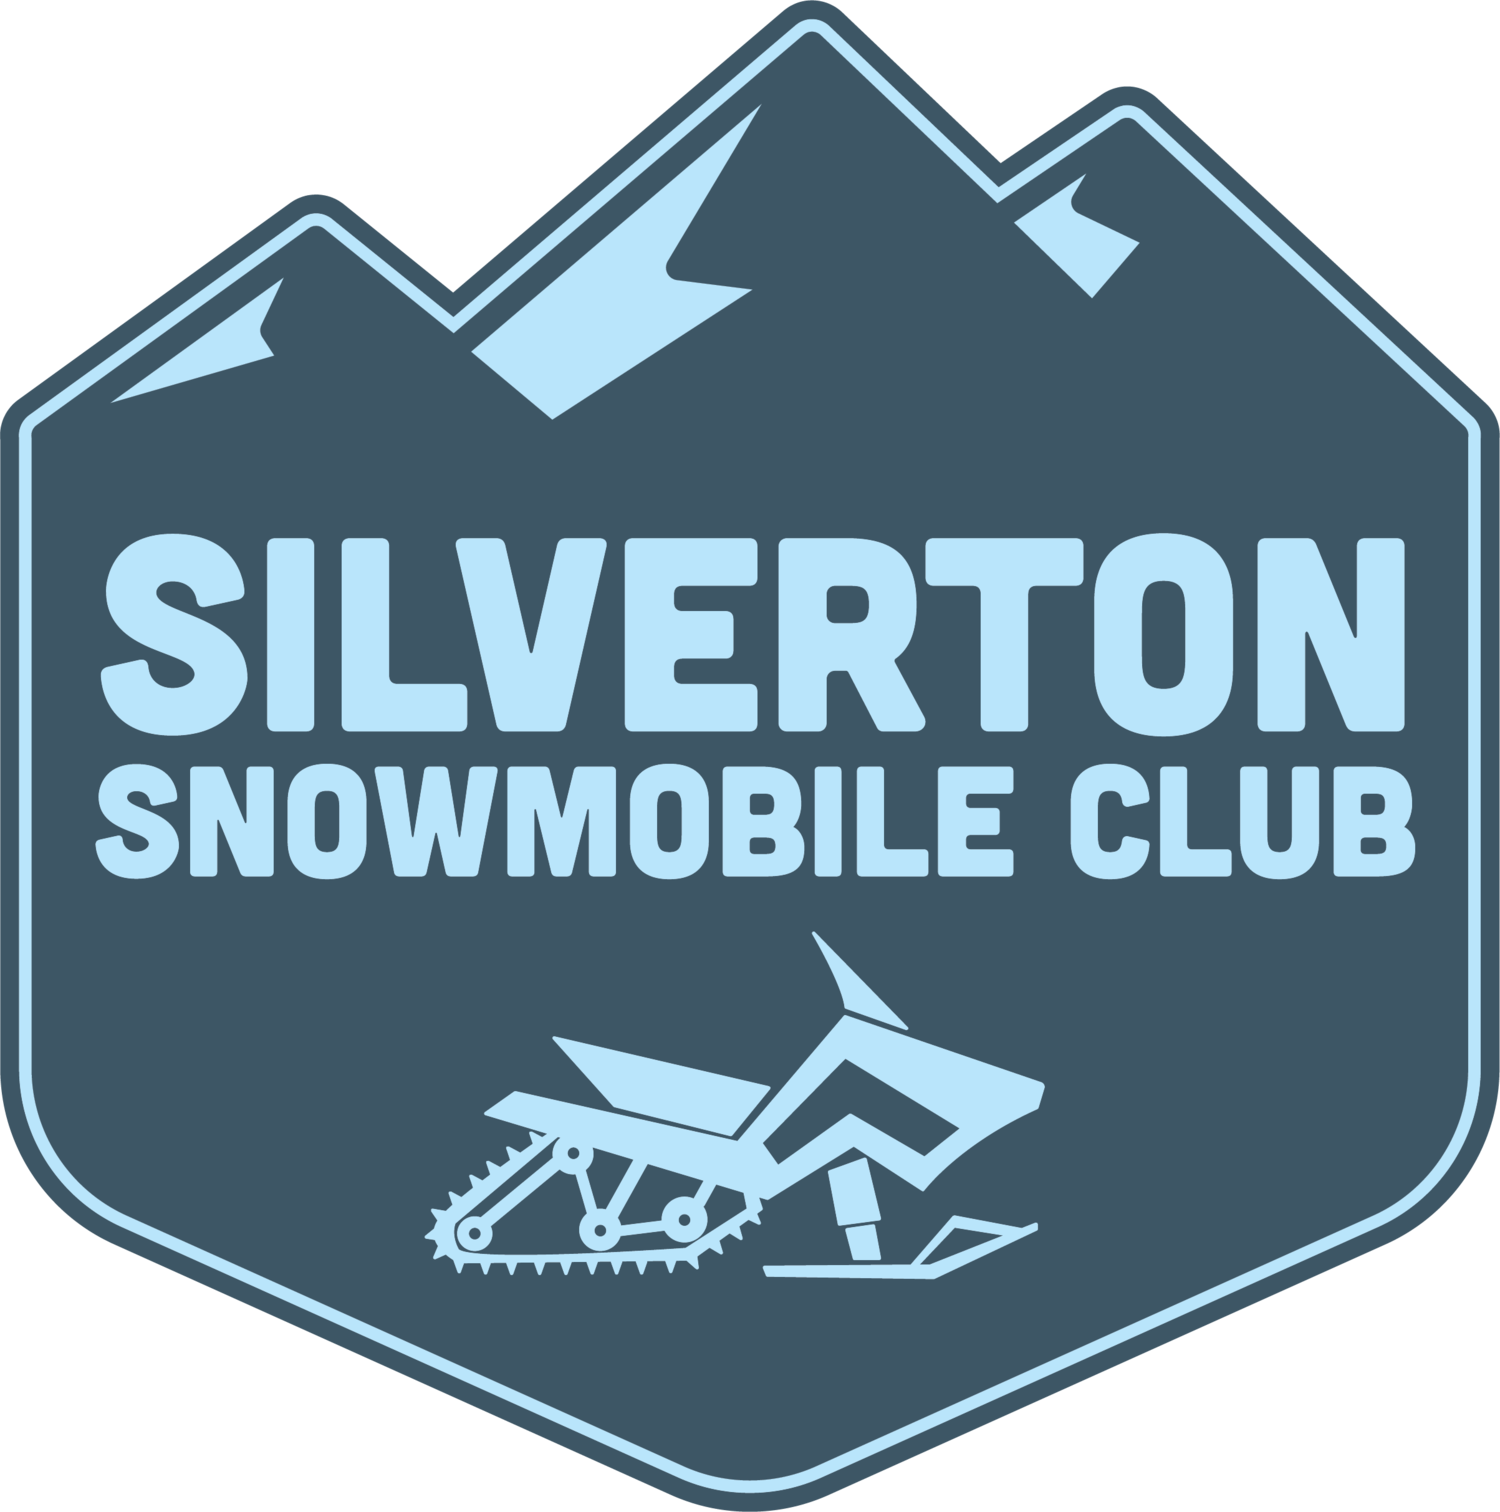 Silverton Snowmobile Club